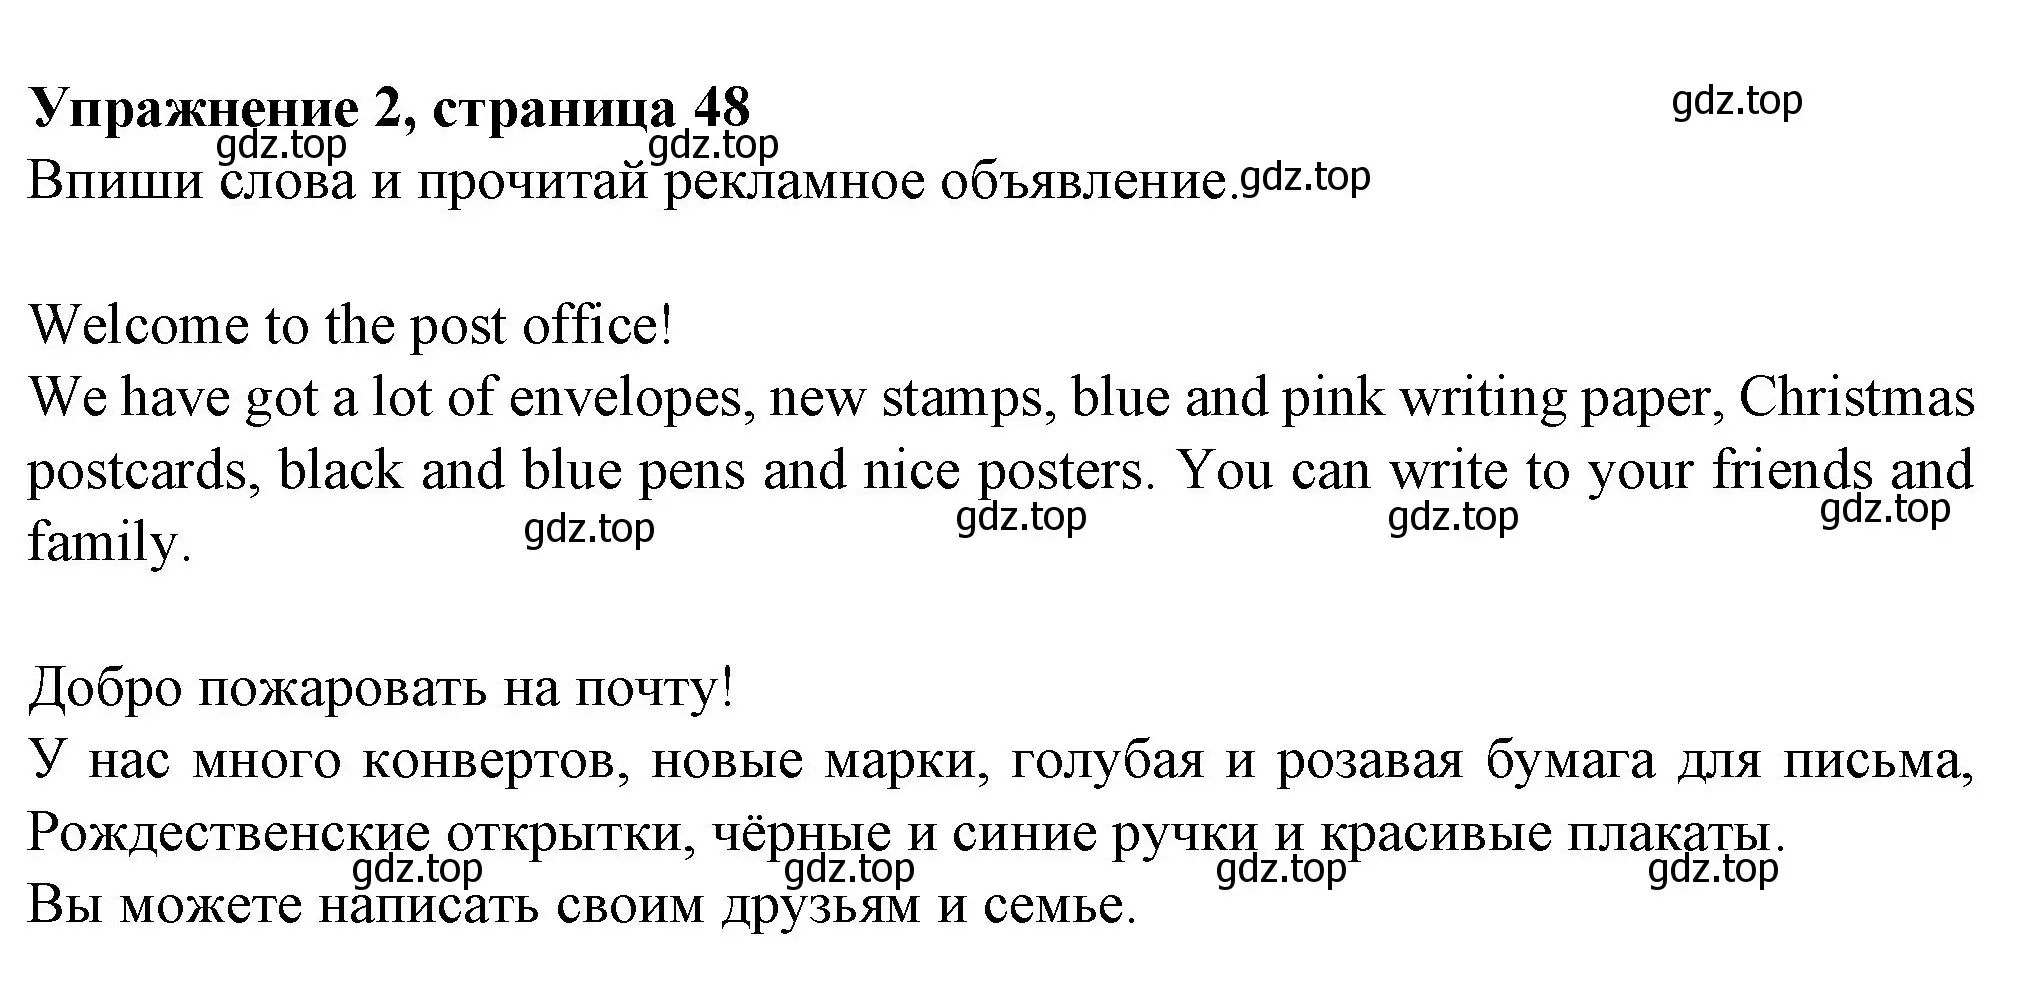 Решение номер 2 (страница 48) гдз по английскому языку 3 класс Биболетова, Денисенко, рабочая тетрадь